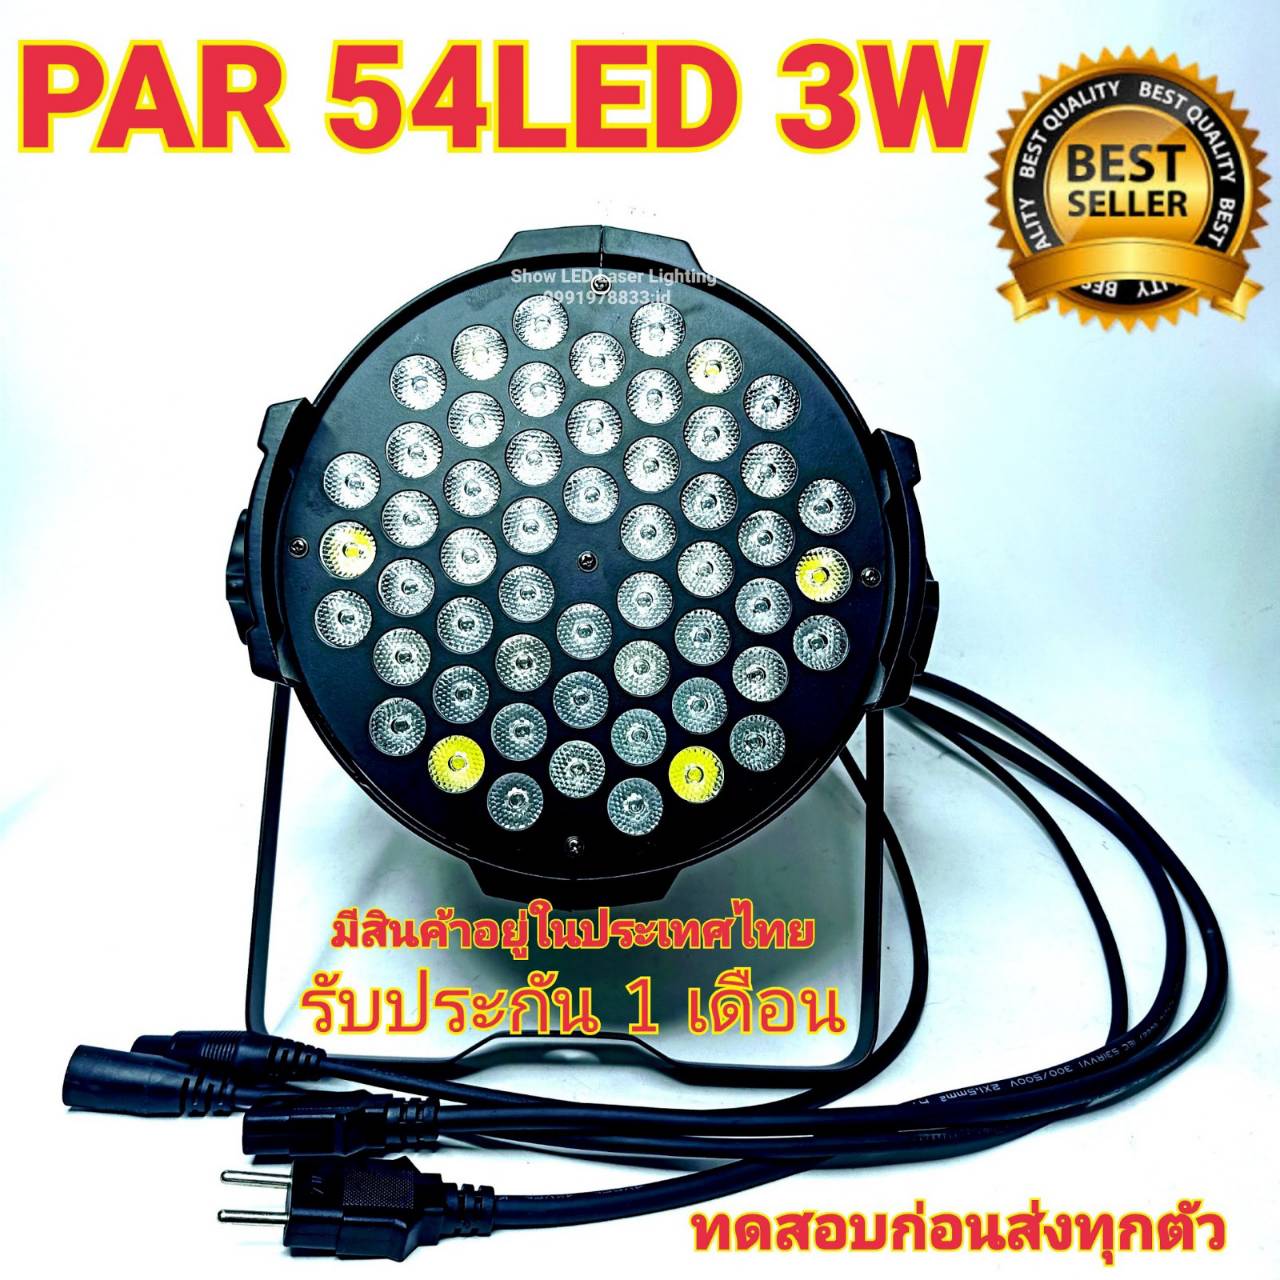 ไฟ LED ไฟพาร์ LED 54x3W PAR 54 LED 3w RGBW ไฟพาร์ LED disco lights LED ไฟเวที ไฟดิสโก้เธค